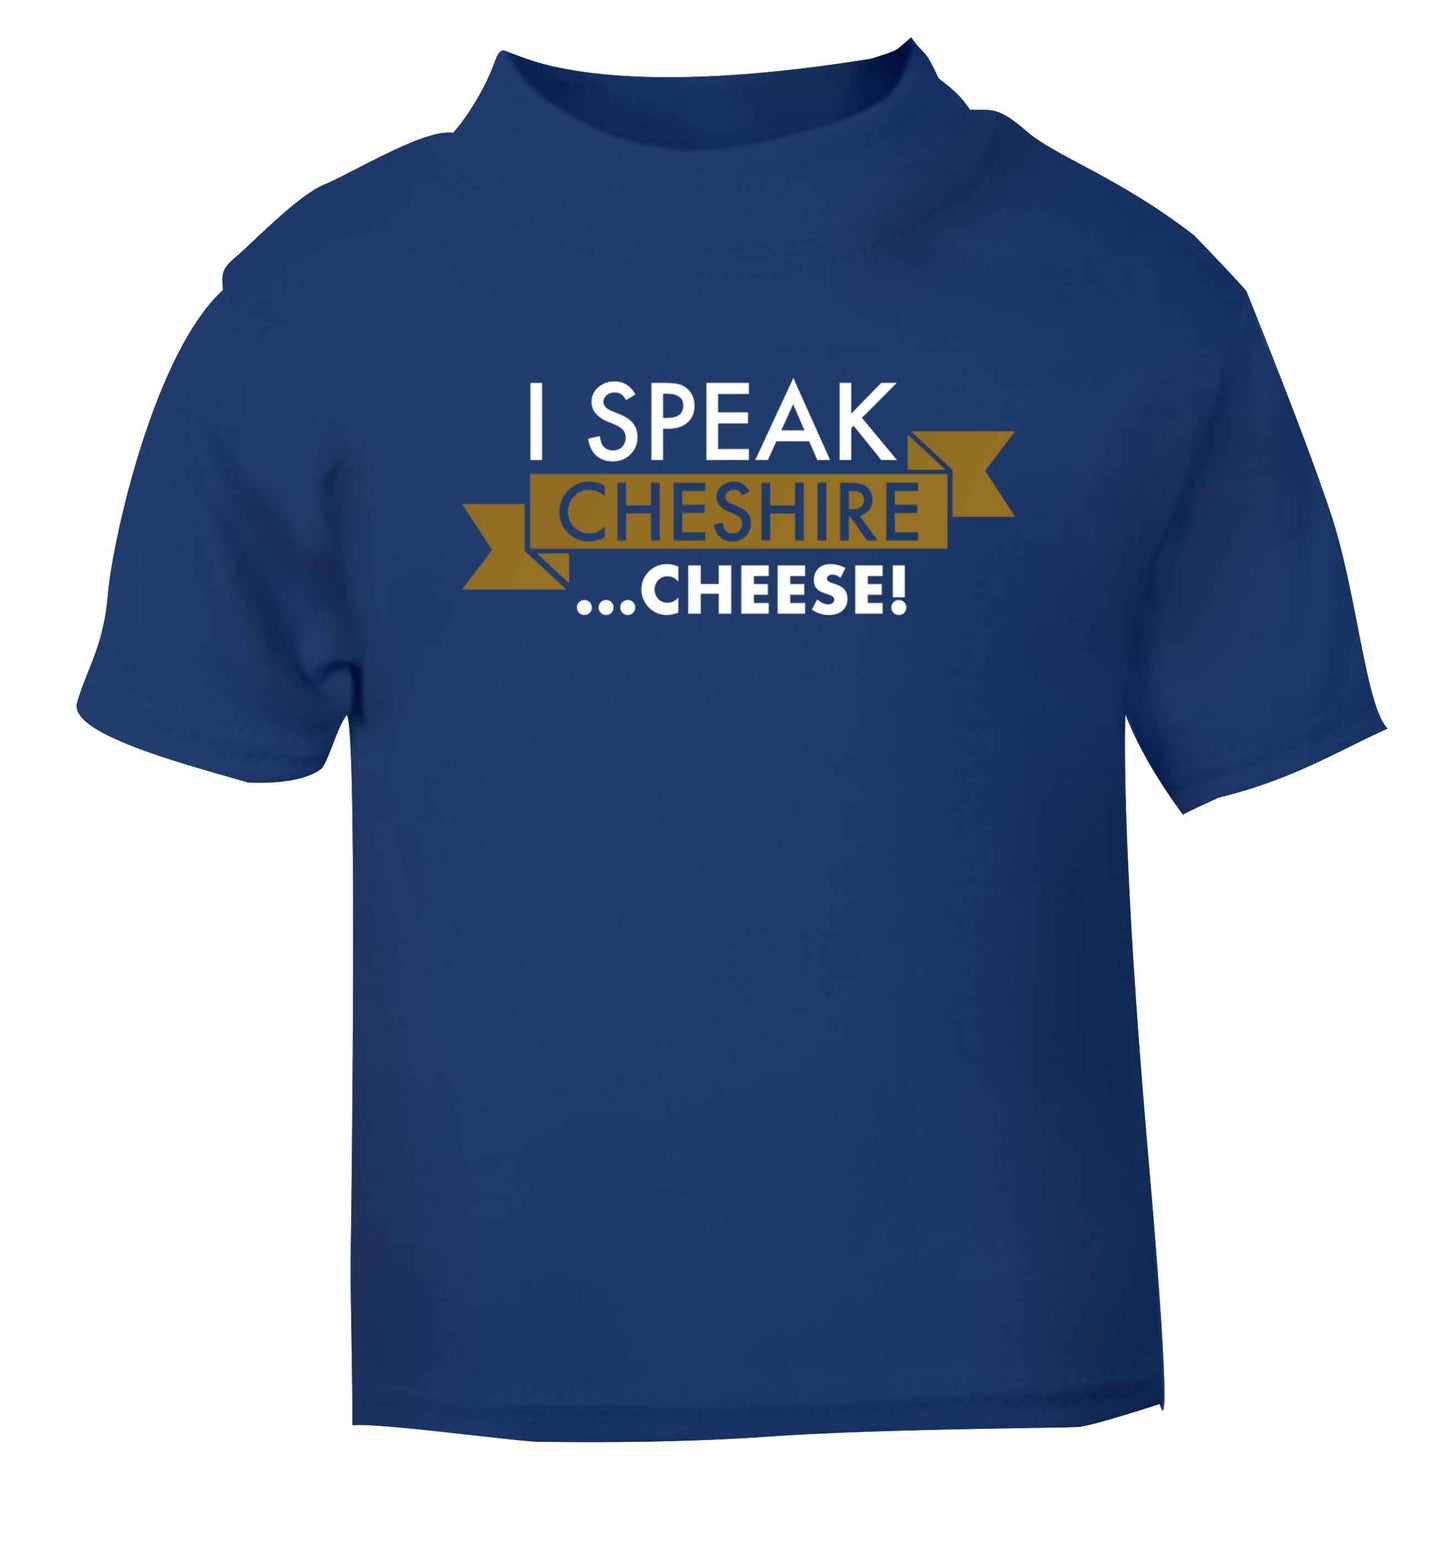 I speak Cheshire cheese blue Baby Toddler Tshirt 2 Years